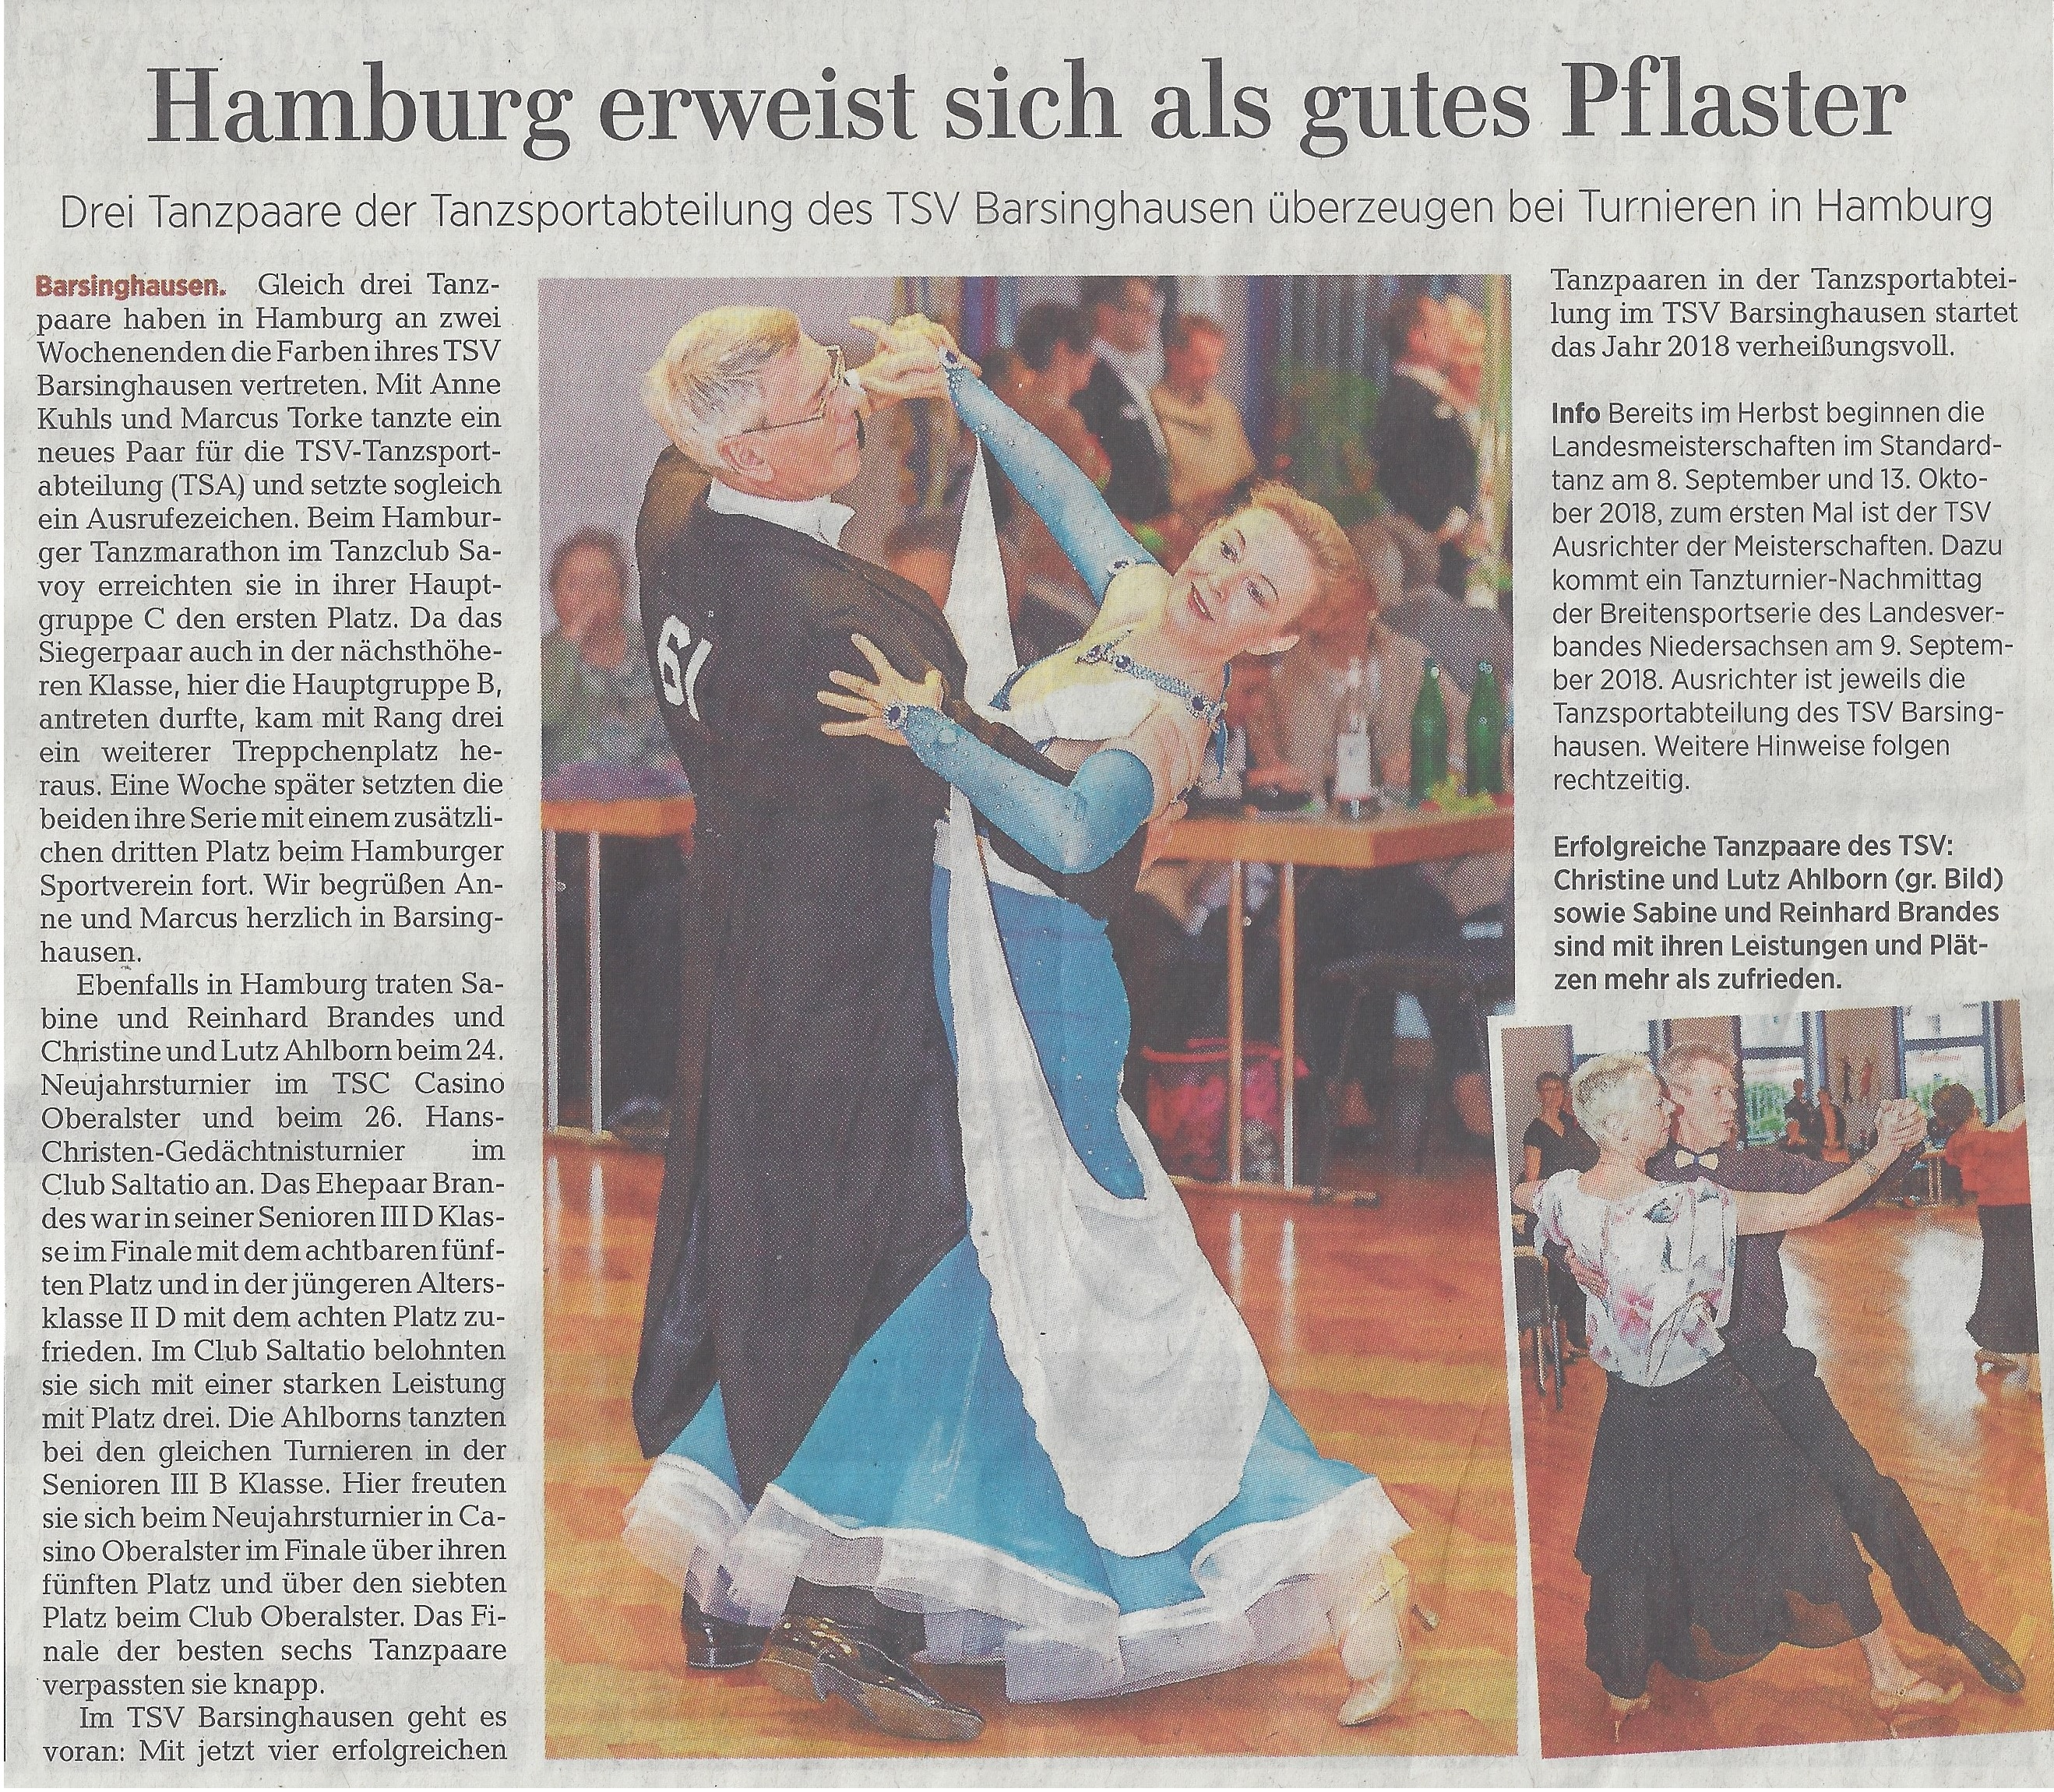 Anne Kuhls / Marcus Torke (ohne Bild), Sabine und Reinhard Brandes und Christine und Lutz Ahlborn erfolgreich in Hamburg